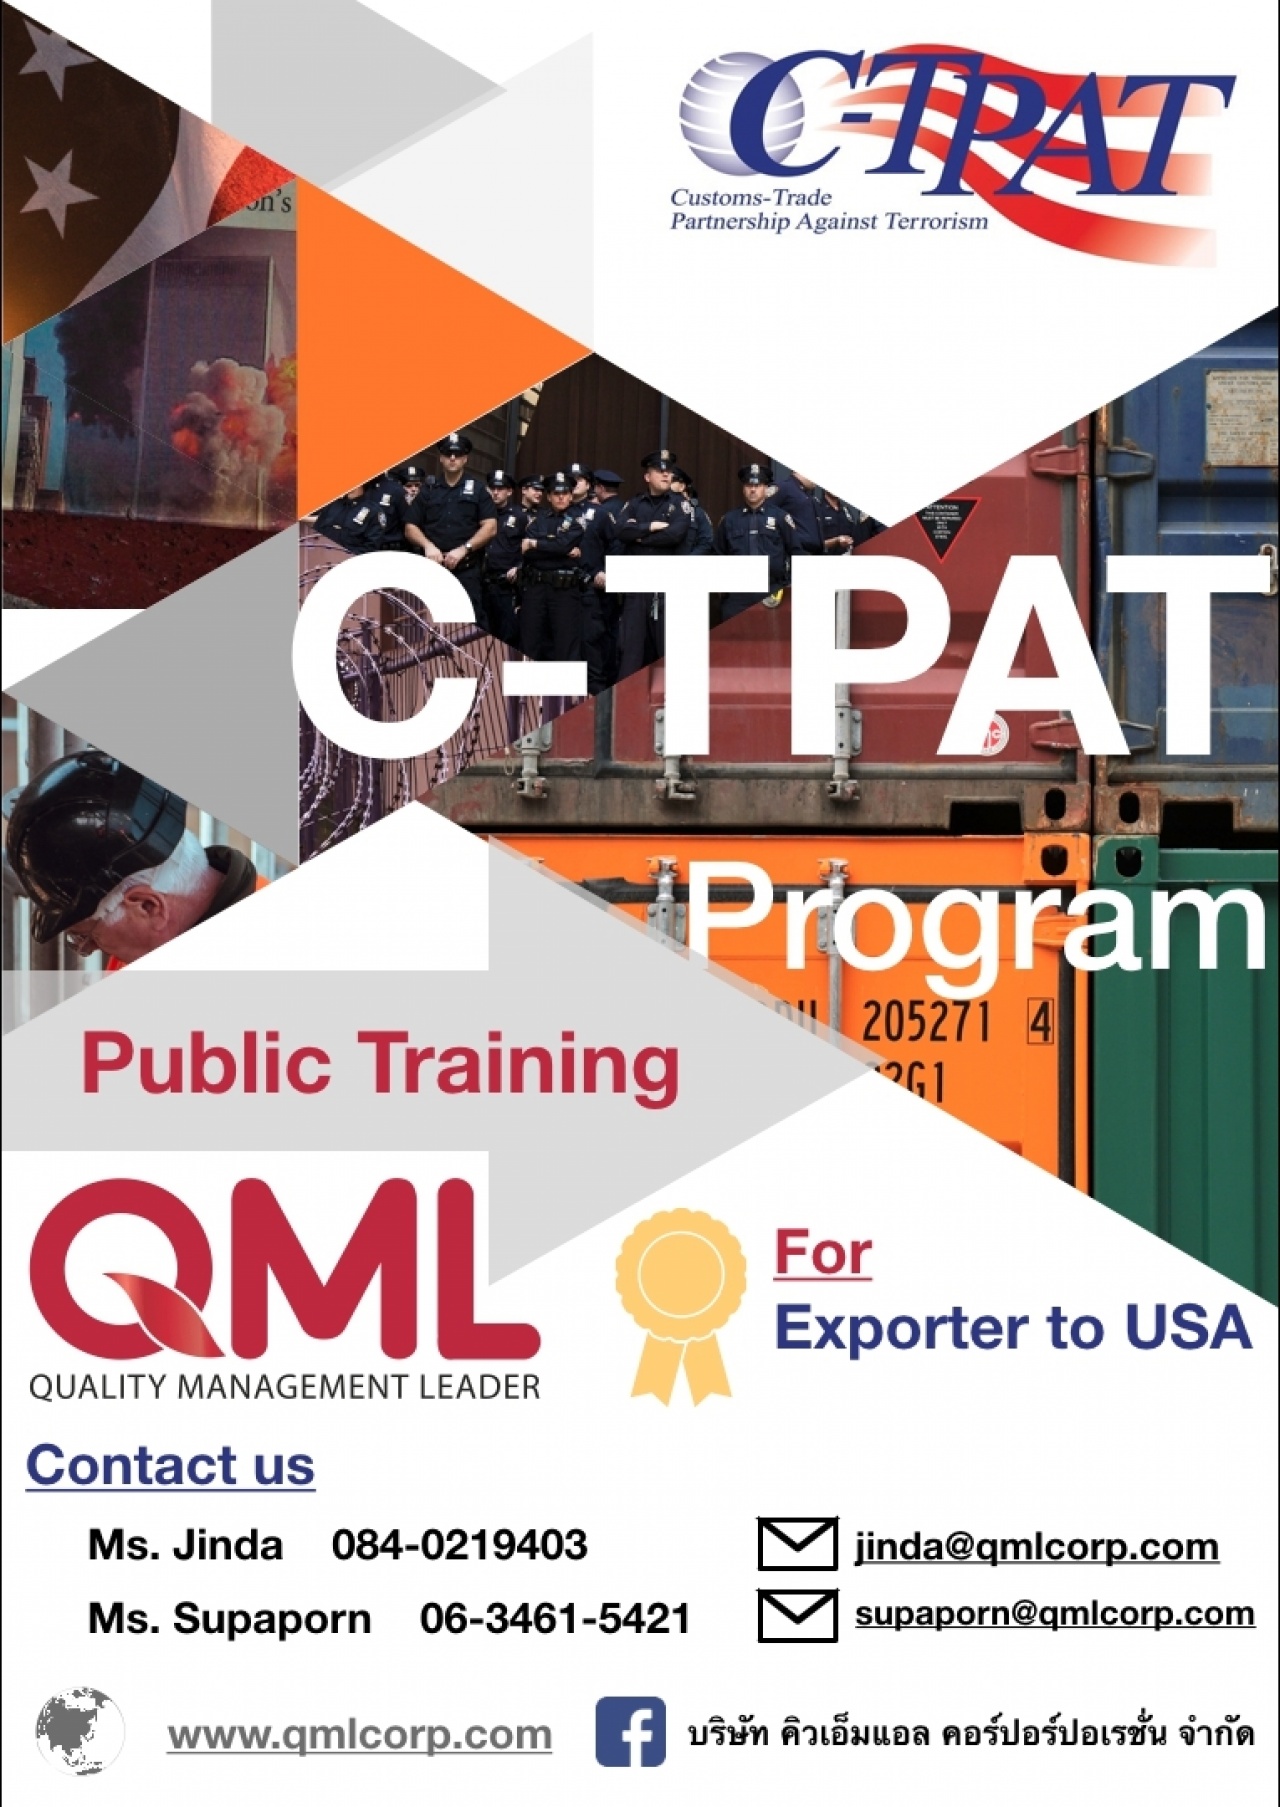 หลักสูตรการฝึกอบรม C-TPAT